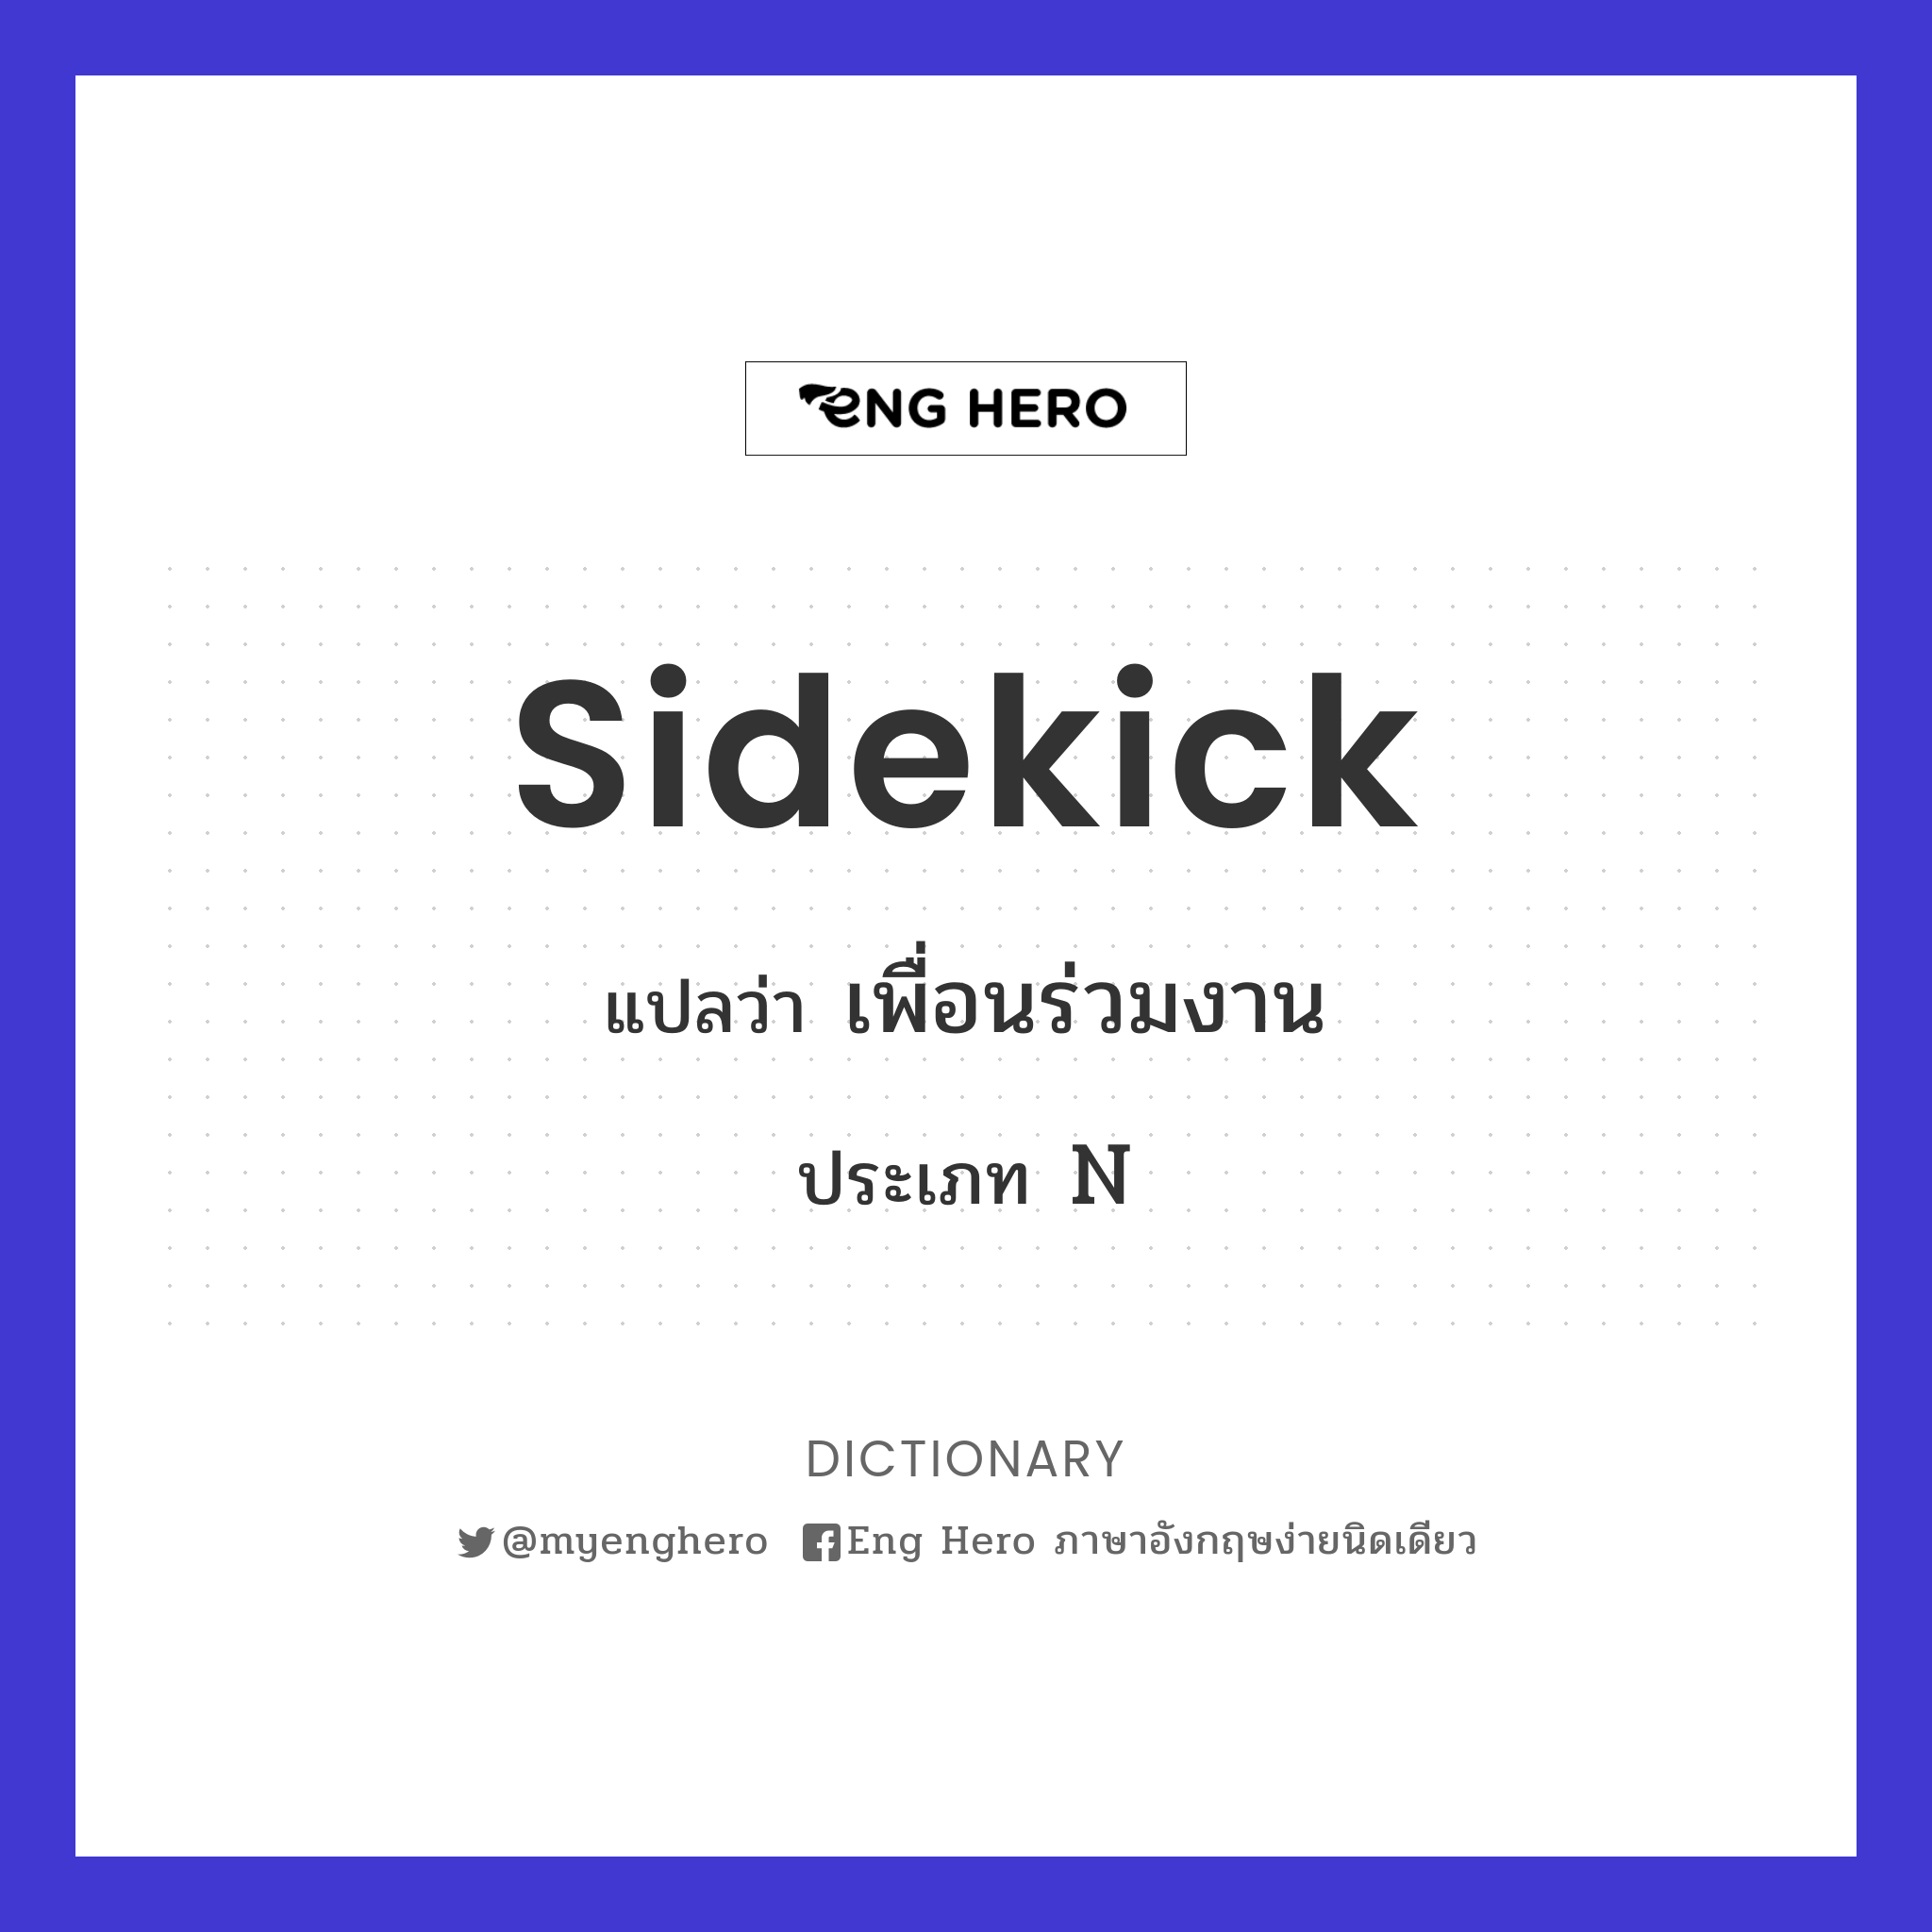 sidekick